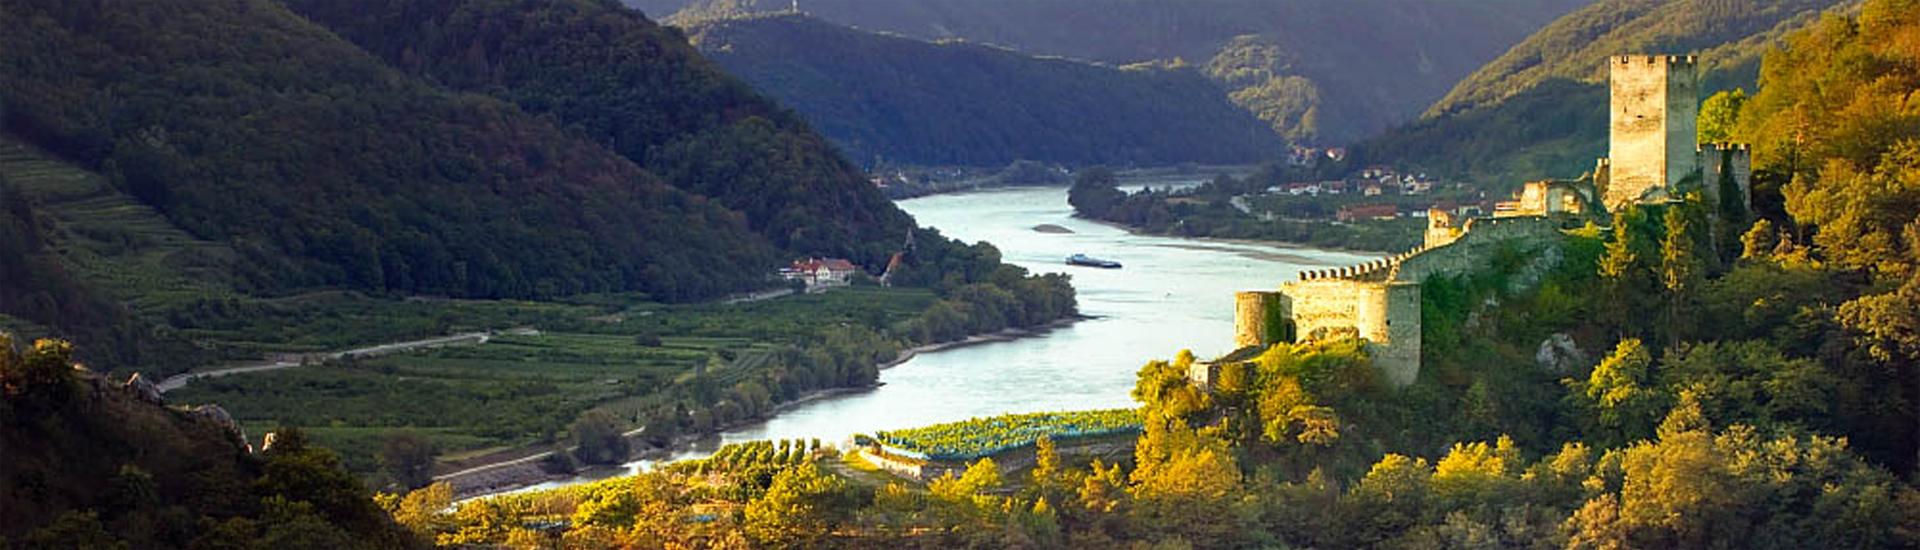 Zamki i winnice nad magicznym Dunajem – fotoweekend w Wachau